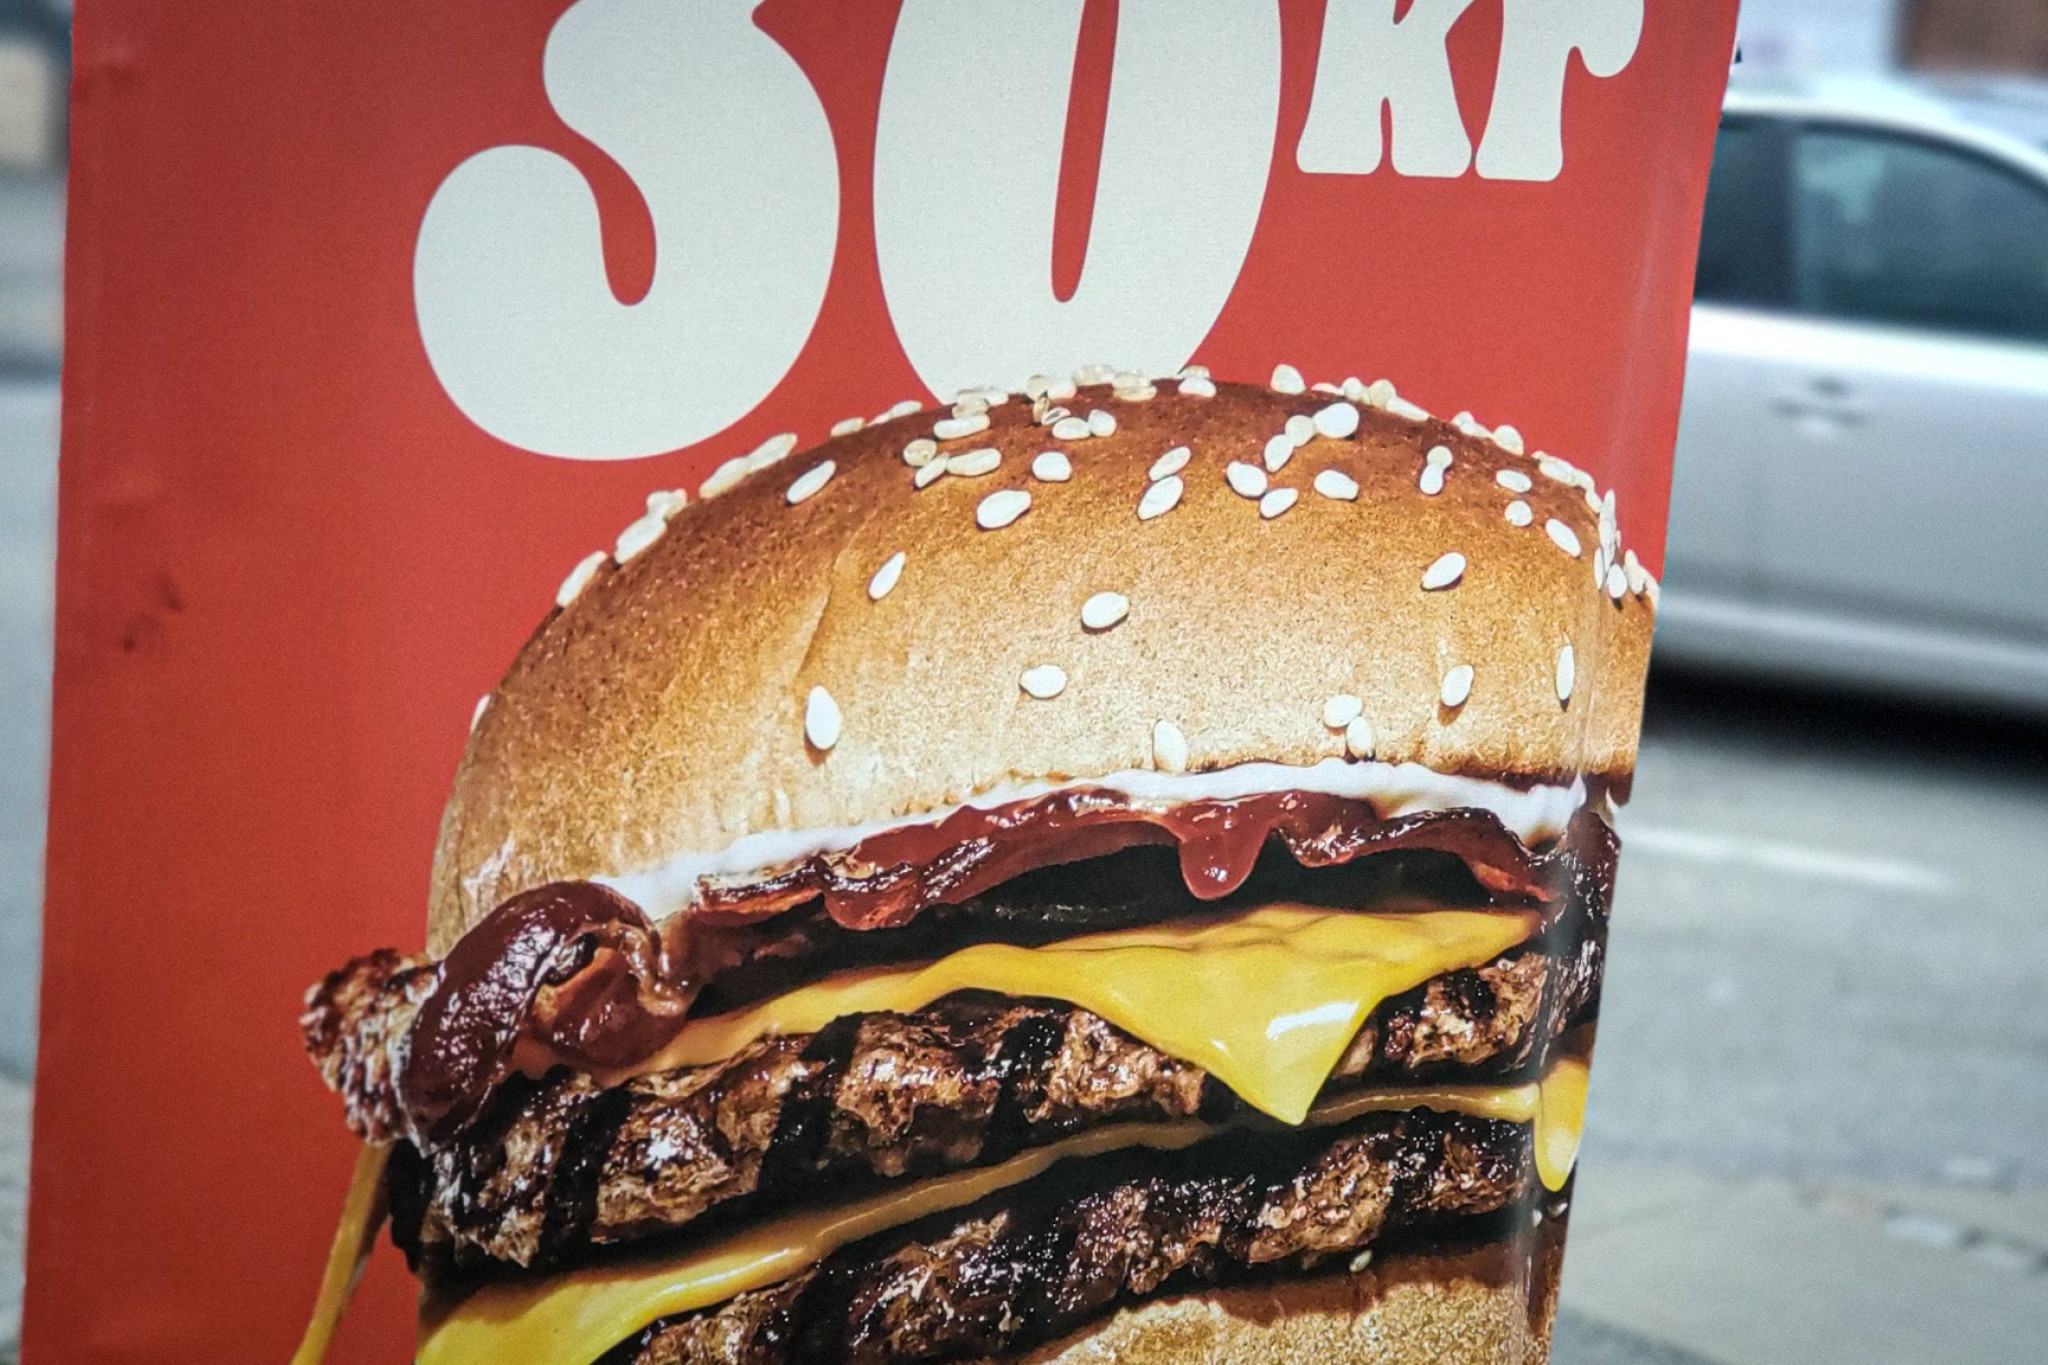 Reklame for en burger til 30 kr